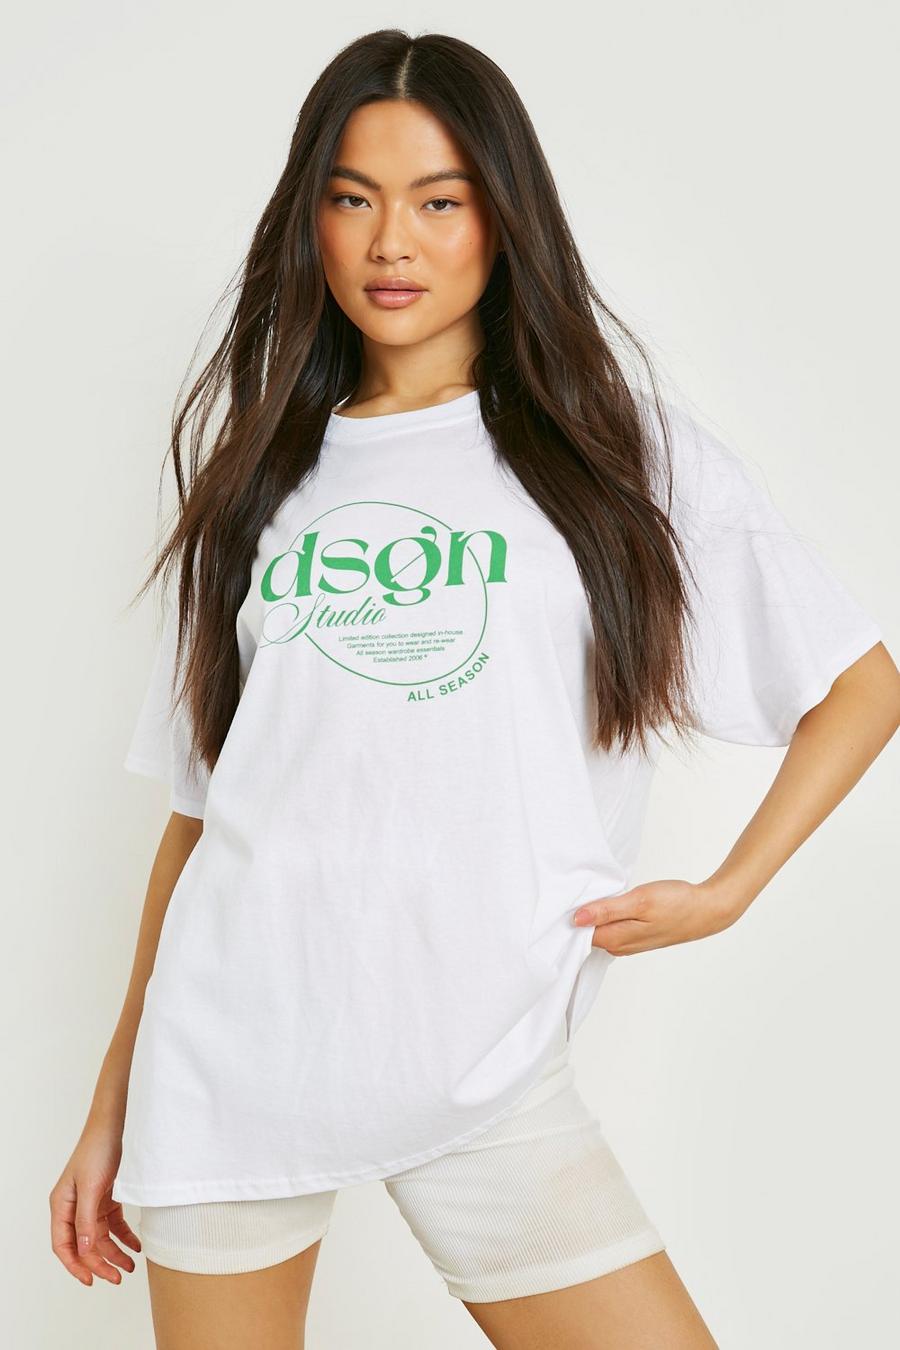 T-Shirt mit Dsgn Studio Print, White blanc